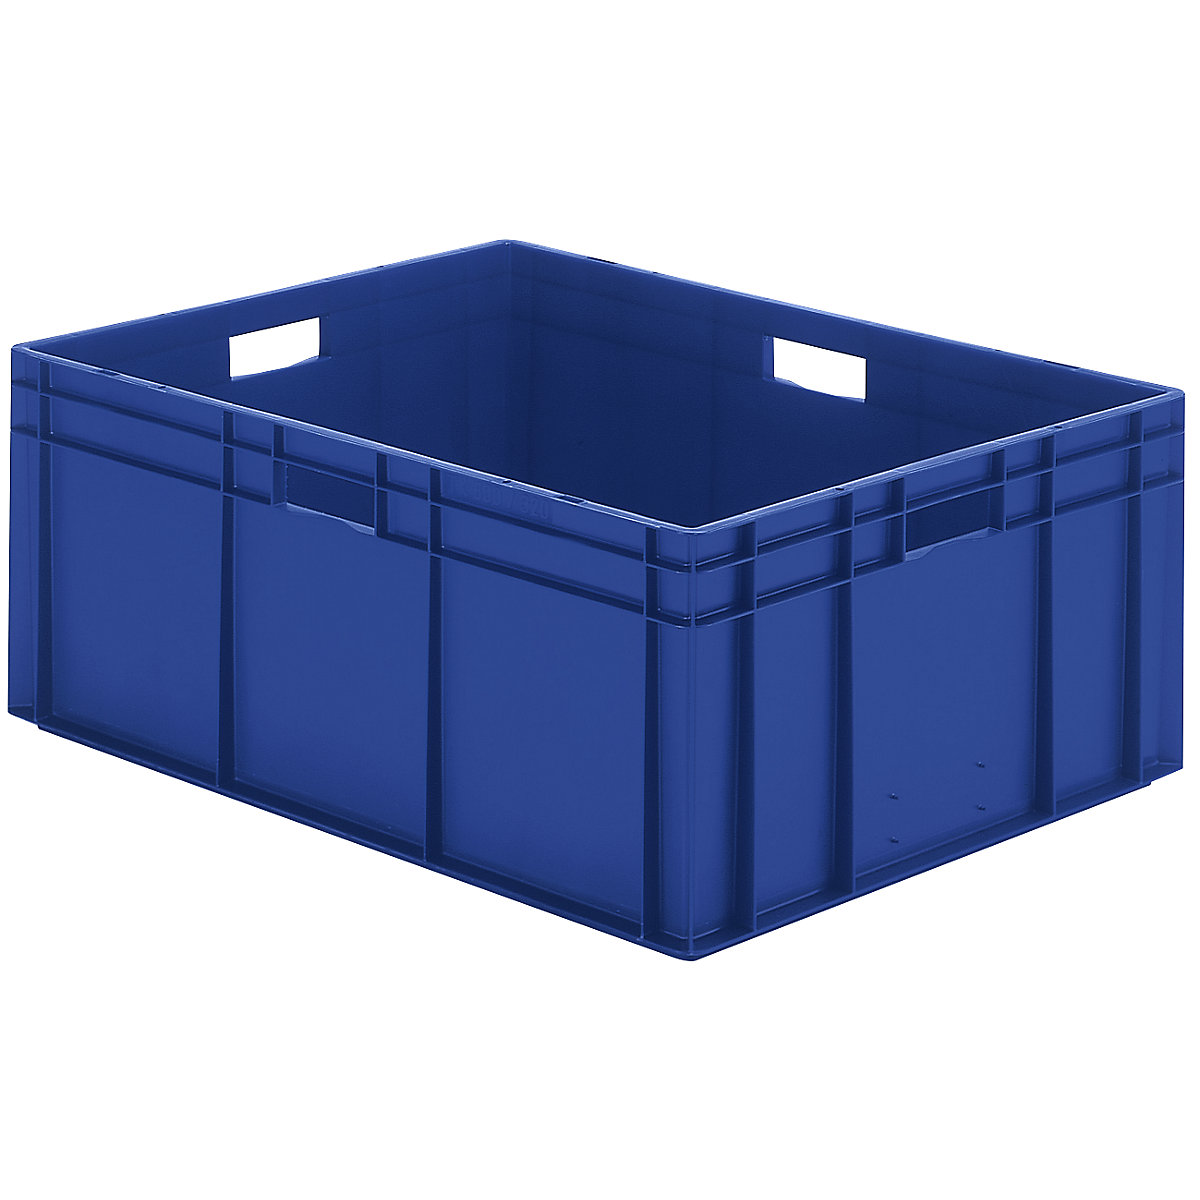 Euro-Format-Stapelbehälter, Wände und Boden geschlossen, LxBxH 800 x 600 x 320 mm, blau, VE 2 Stk